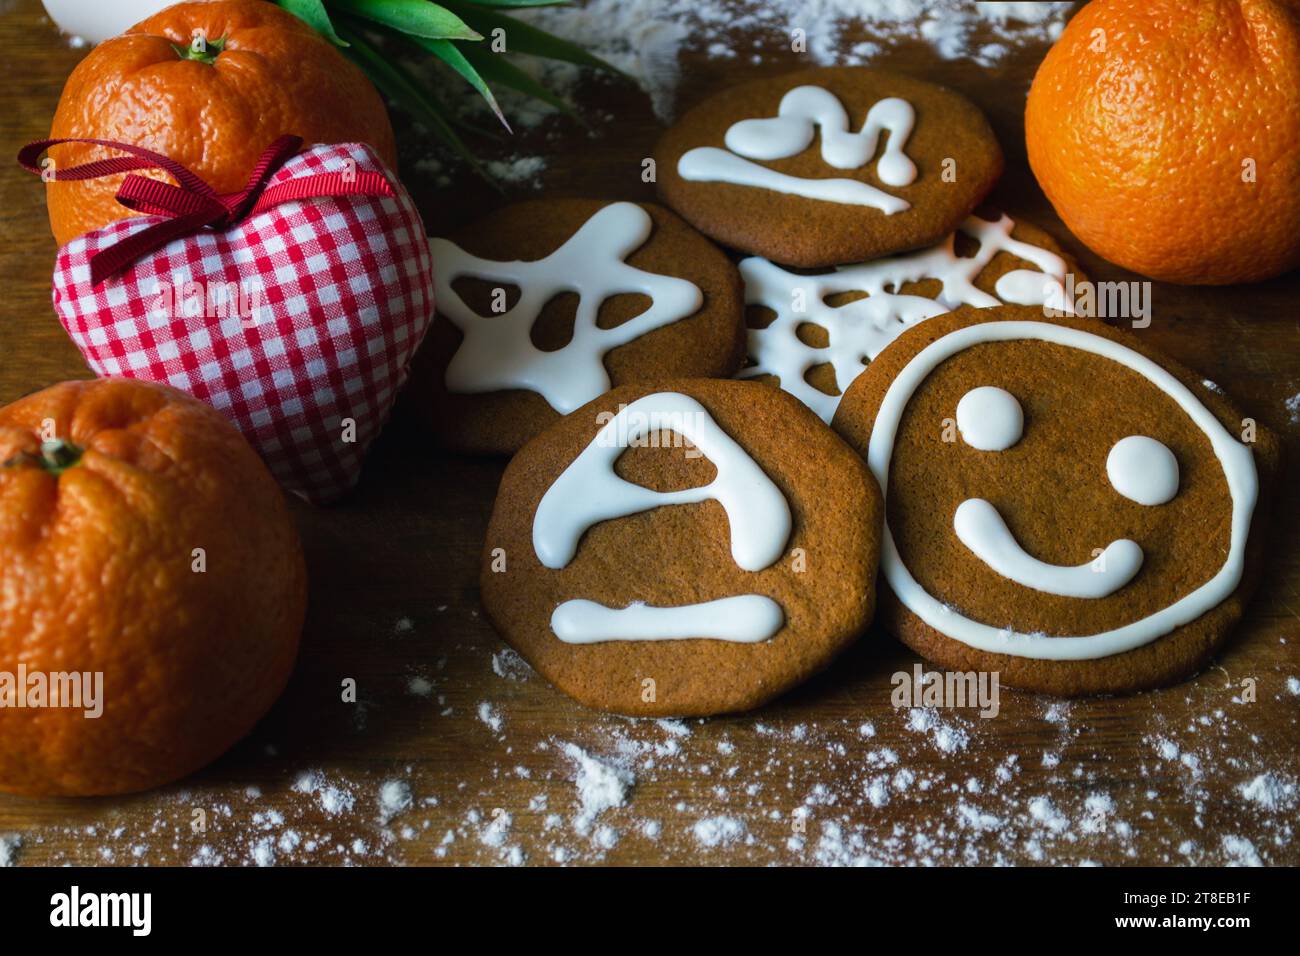 Biscotti dolci al pan di zenzero ricoperti di glassa bianca con vari motivi, circondati da mandarini e un cuore giocattolo su una tavola con farina Foto Stock